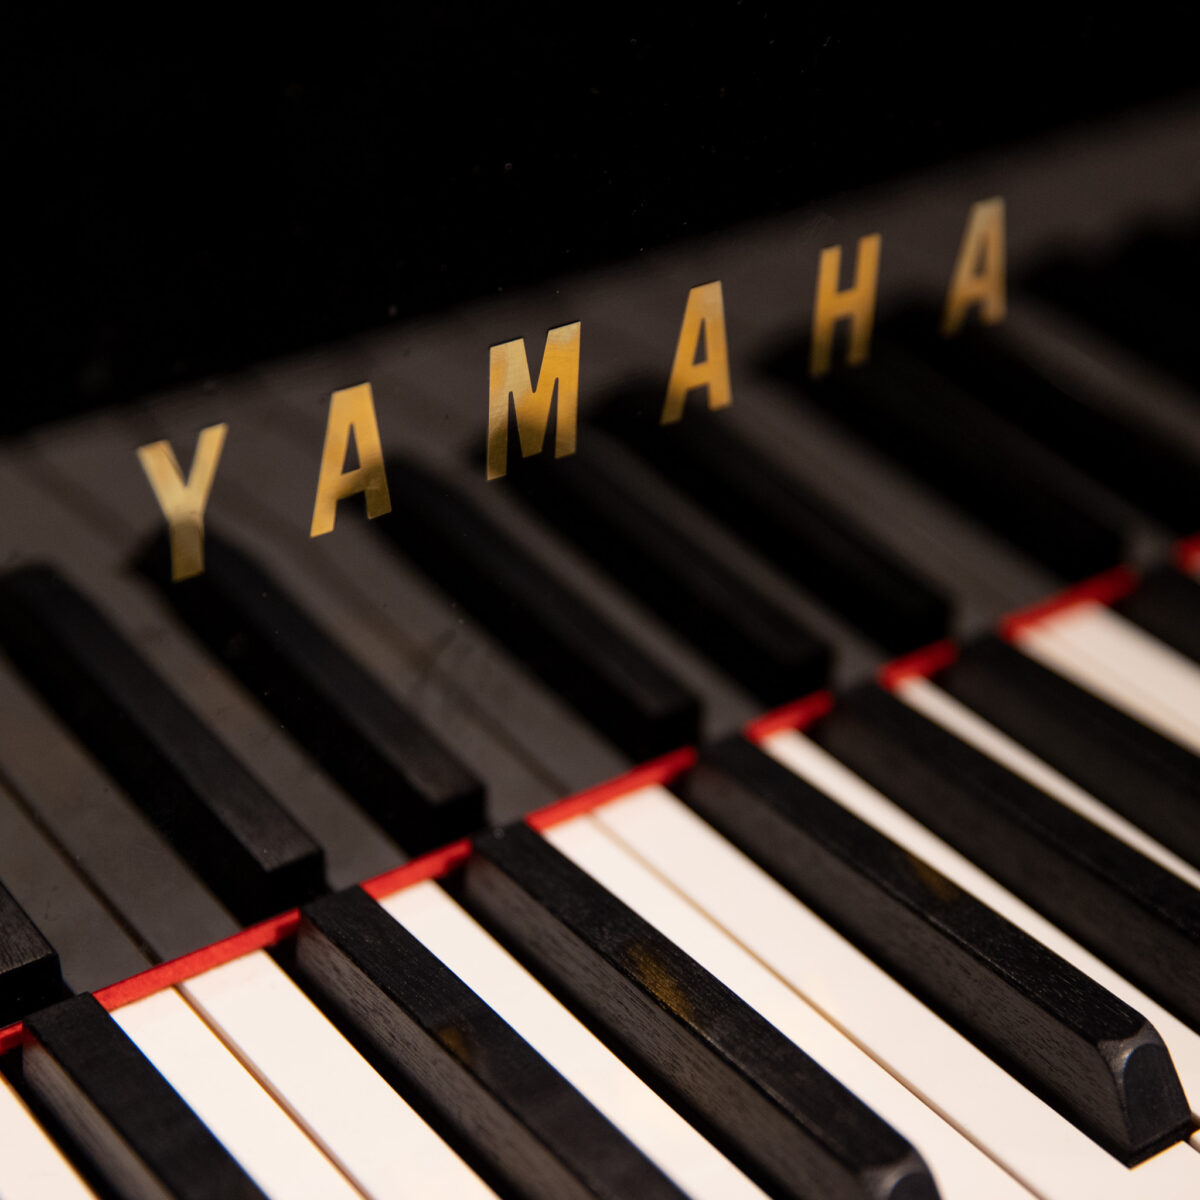 Yamaha AvantGrand NU1XA Piano - Classic Pianos Denver